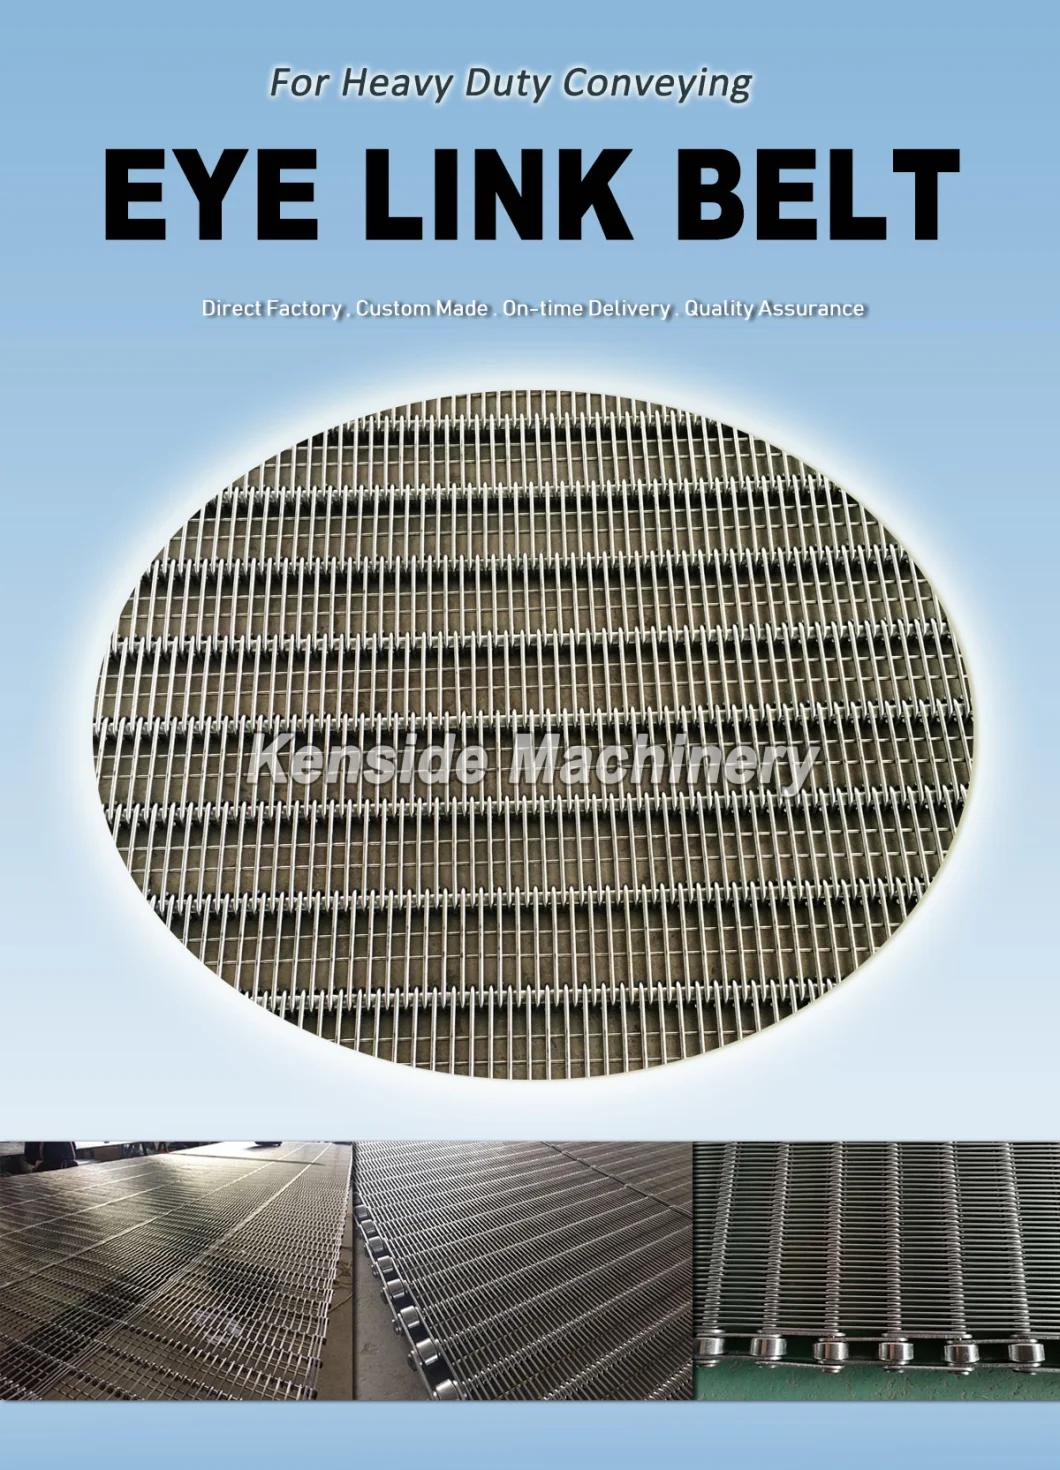 Eyelink Conveyor Belts for Food Manufacturing